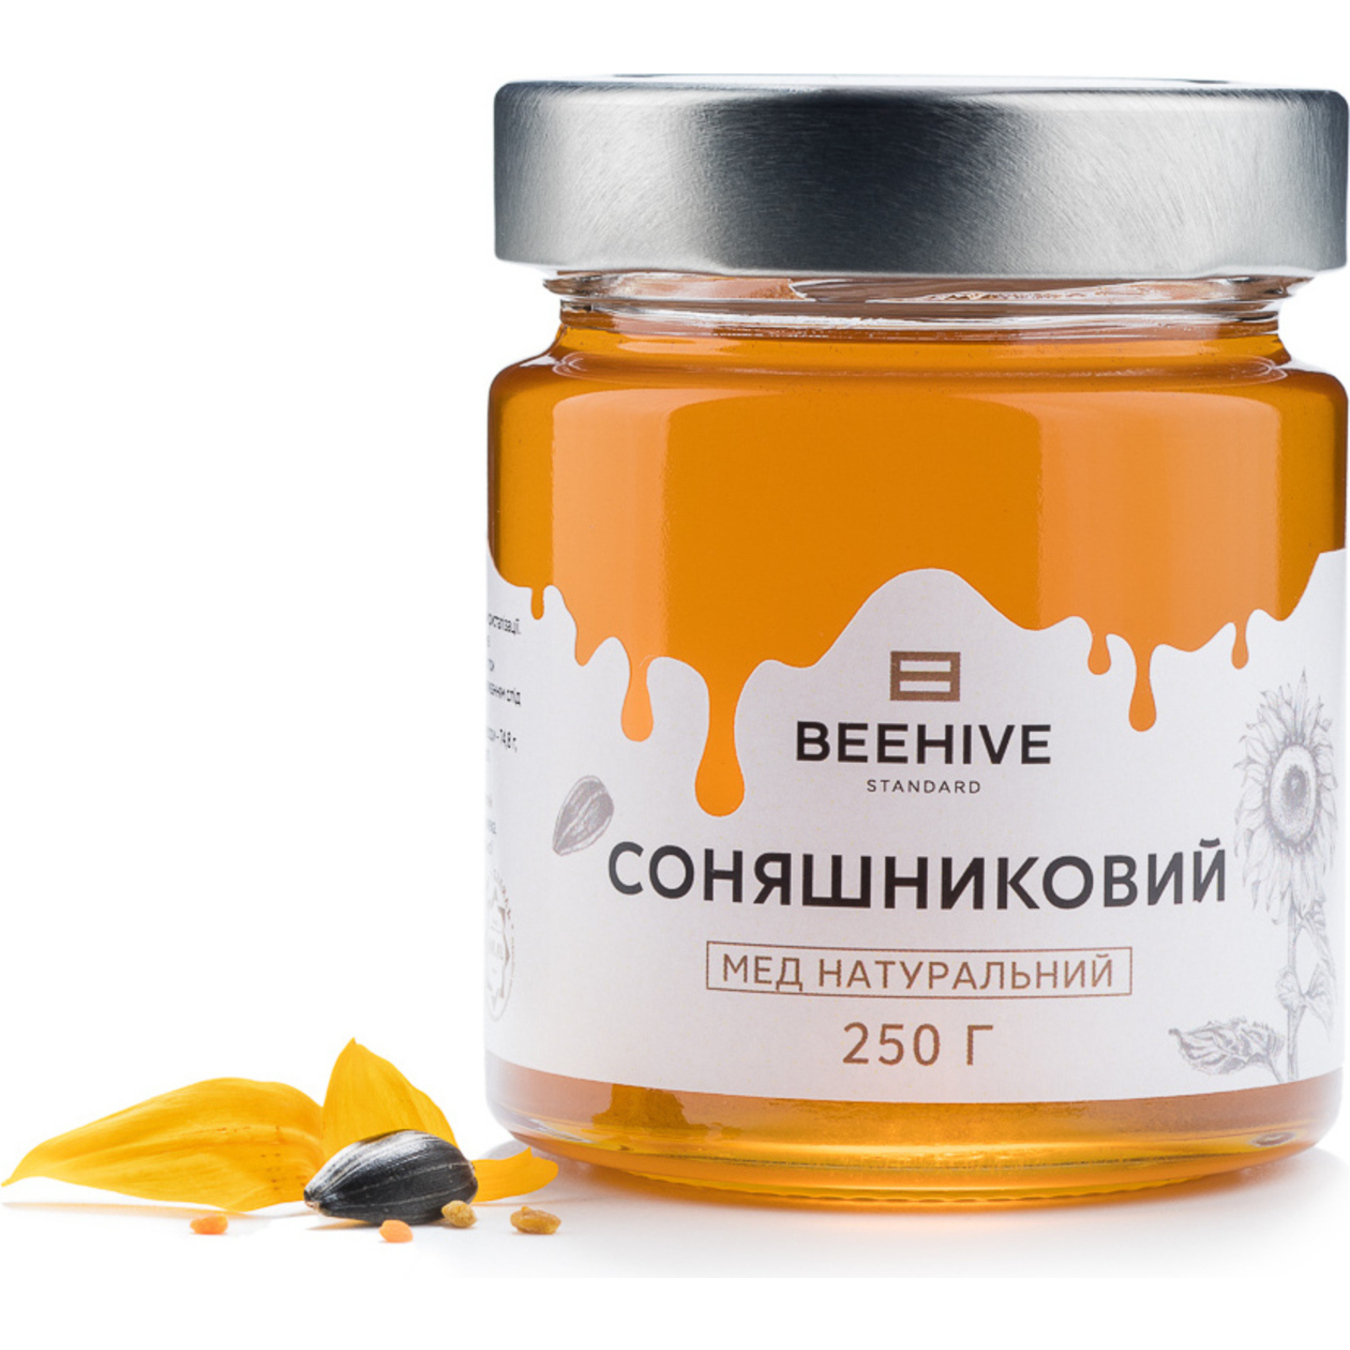 Honey Beehive Standard natural sunflower glass jar 250g